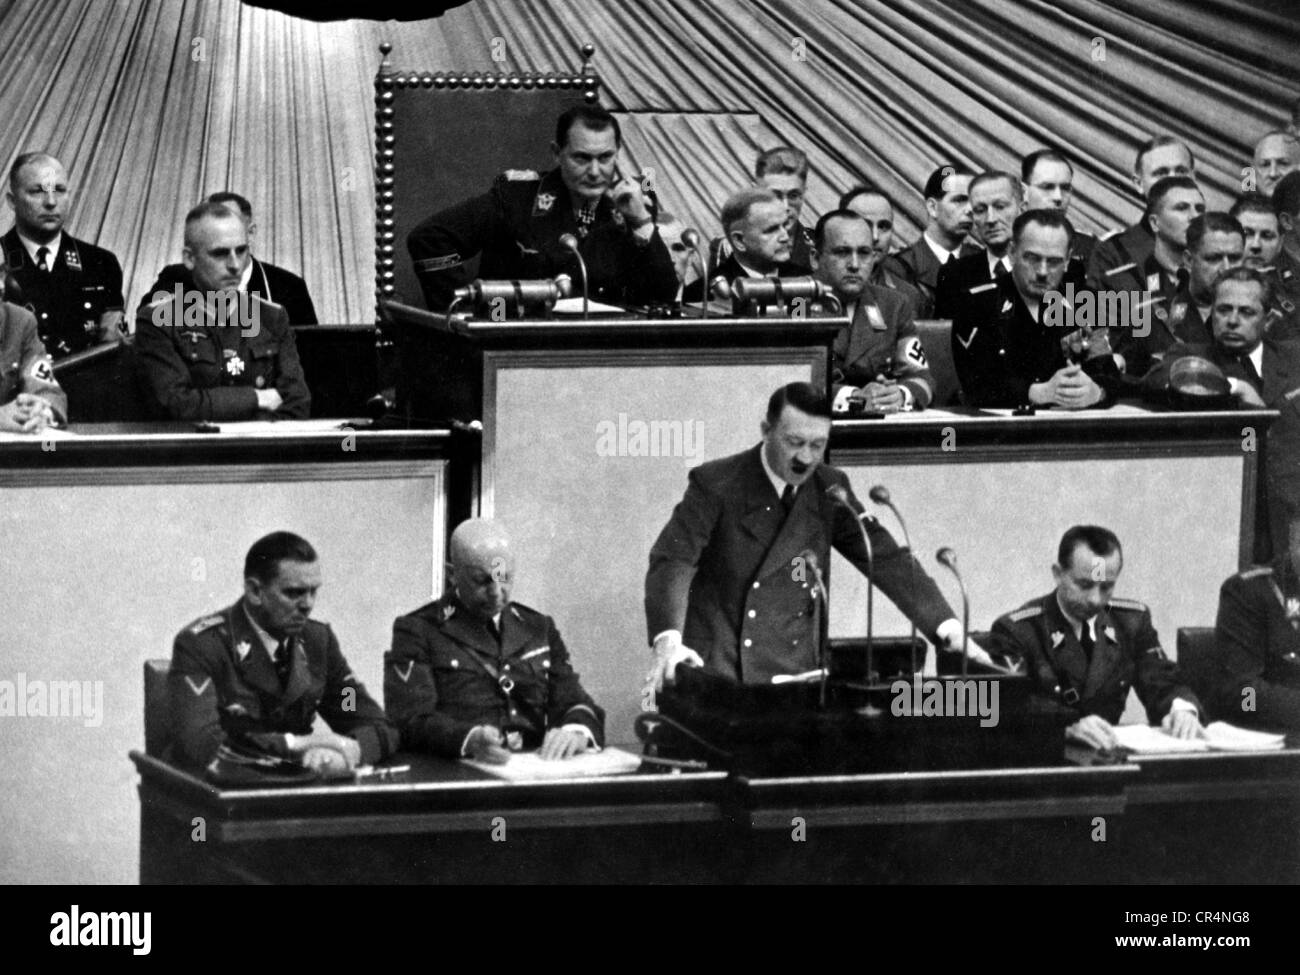 Hitler, Adolf, 20.4.1889 - 30.4.1945, politico tedesco (NSDAP), cancelliere di Fuehrer e Reich dal 1933, discorso al Reichstag, 6.10.1939, offerta di pace alle potenze occidentali, a metà della lunghezza, Foto Stock